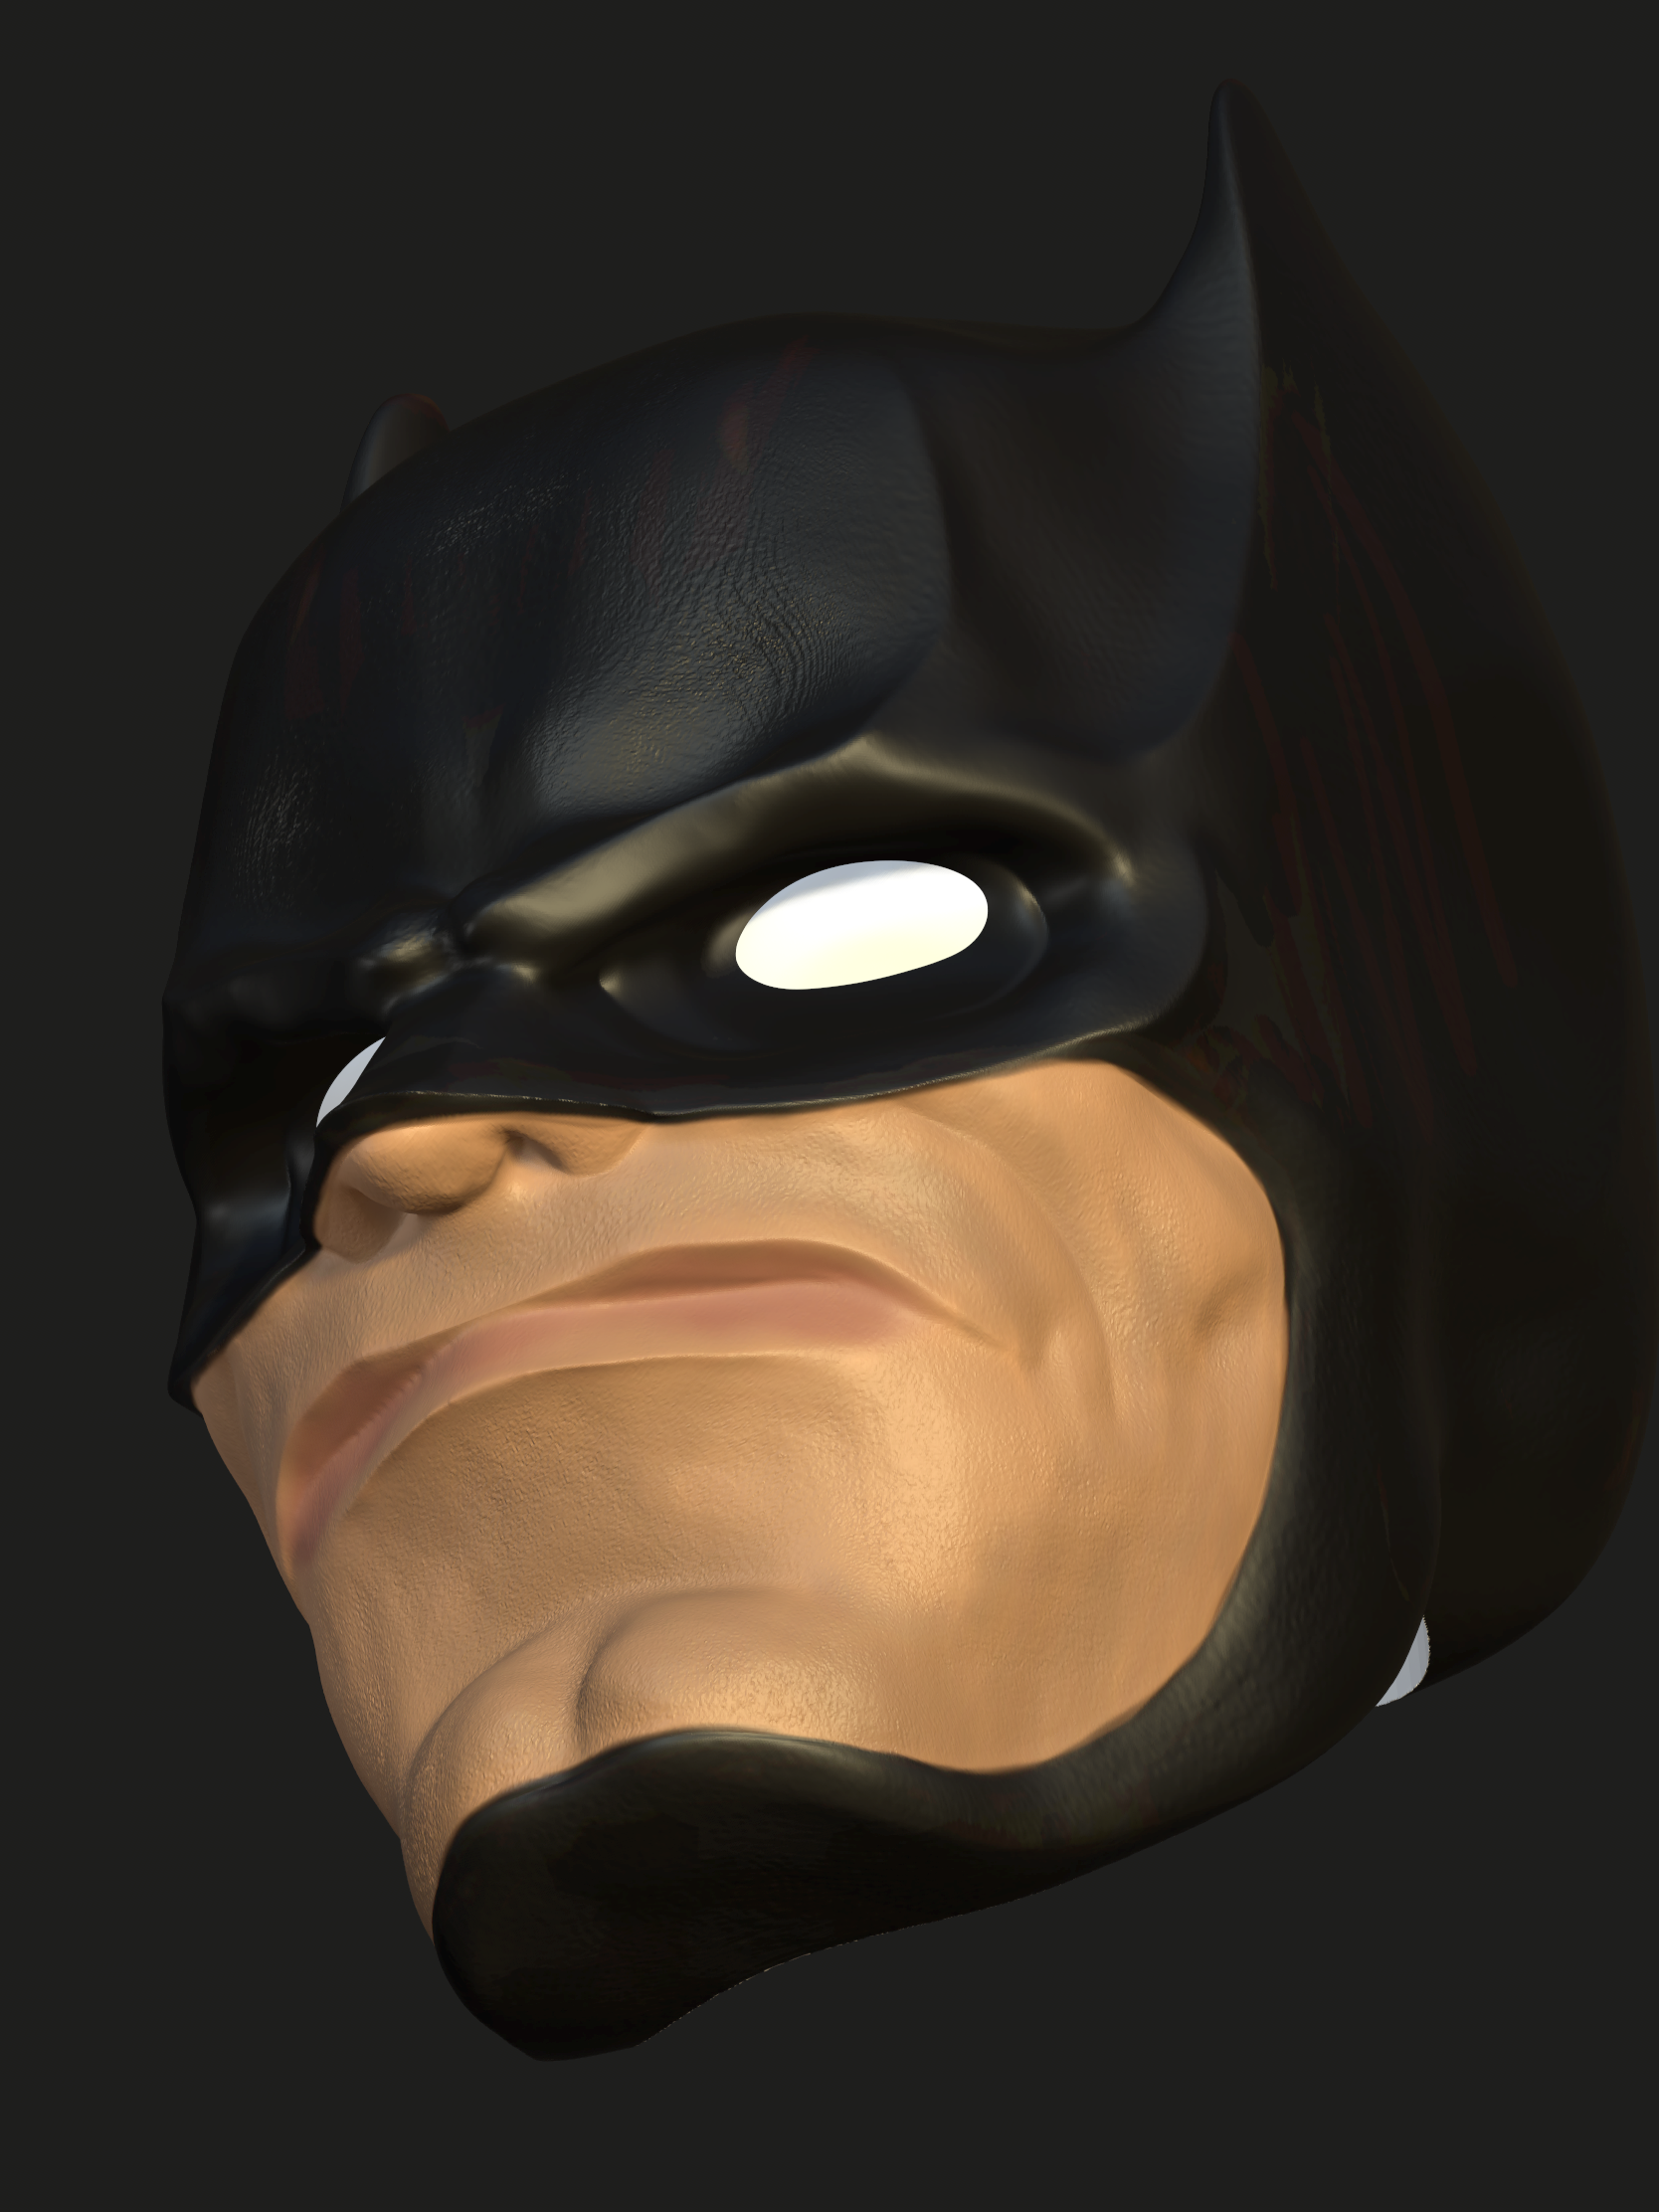 Batman-3.png Download STL file Batman headsculpt figure • 3D printable object, ComboKino